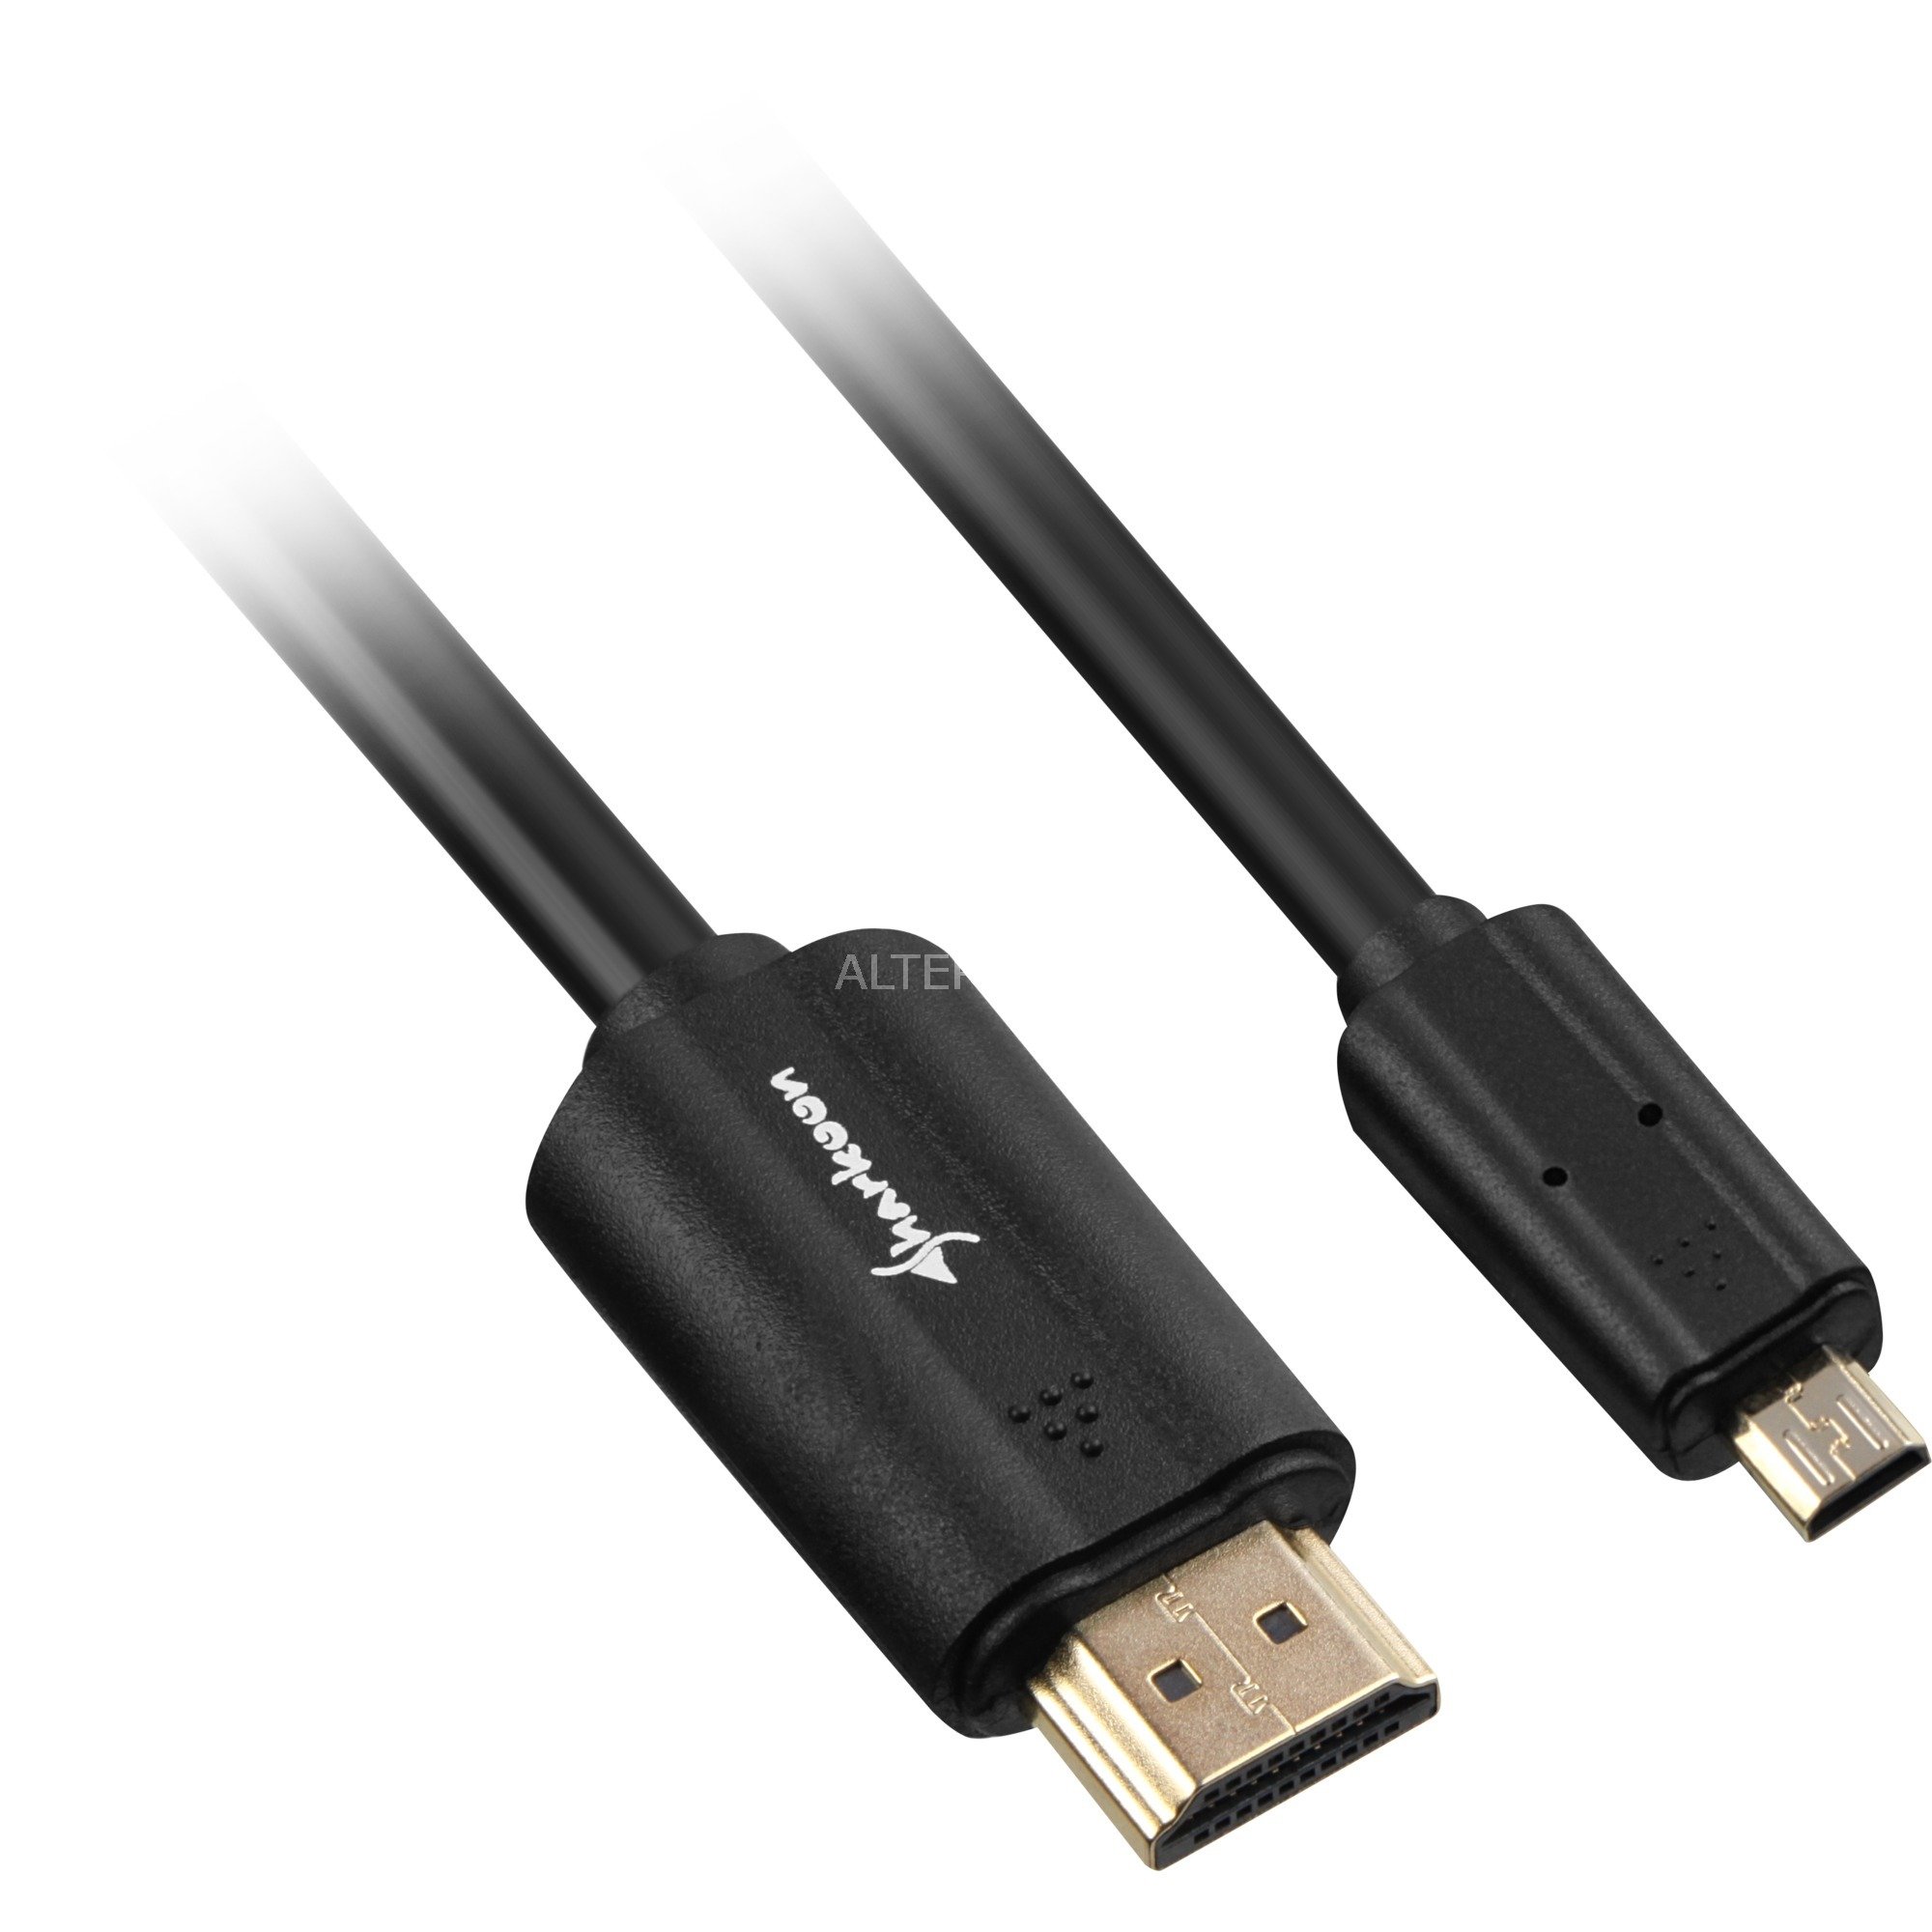 Image of Alternate - Kabel HDMI Stecker > micro HDMI Stecker online einkaufen bei Alternate